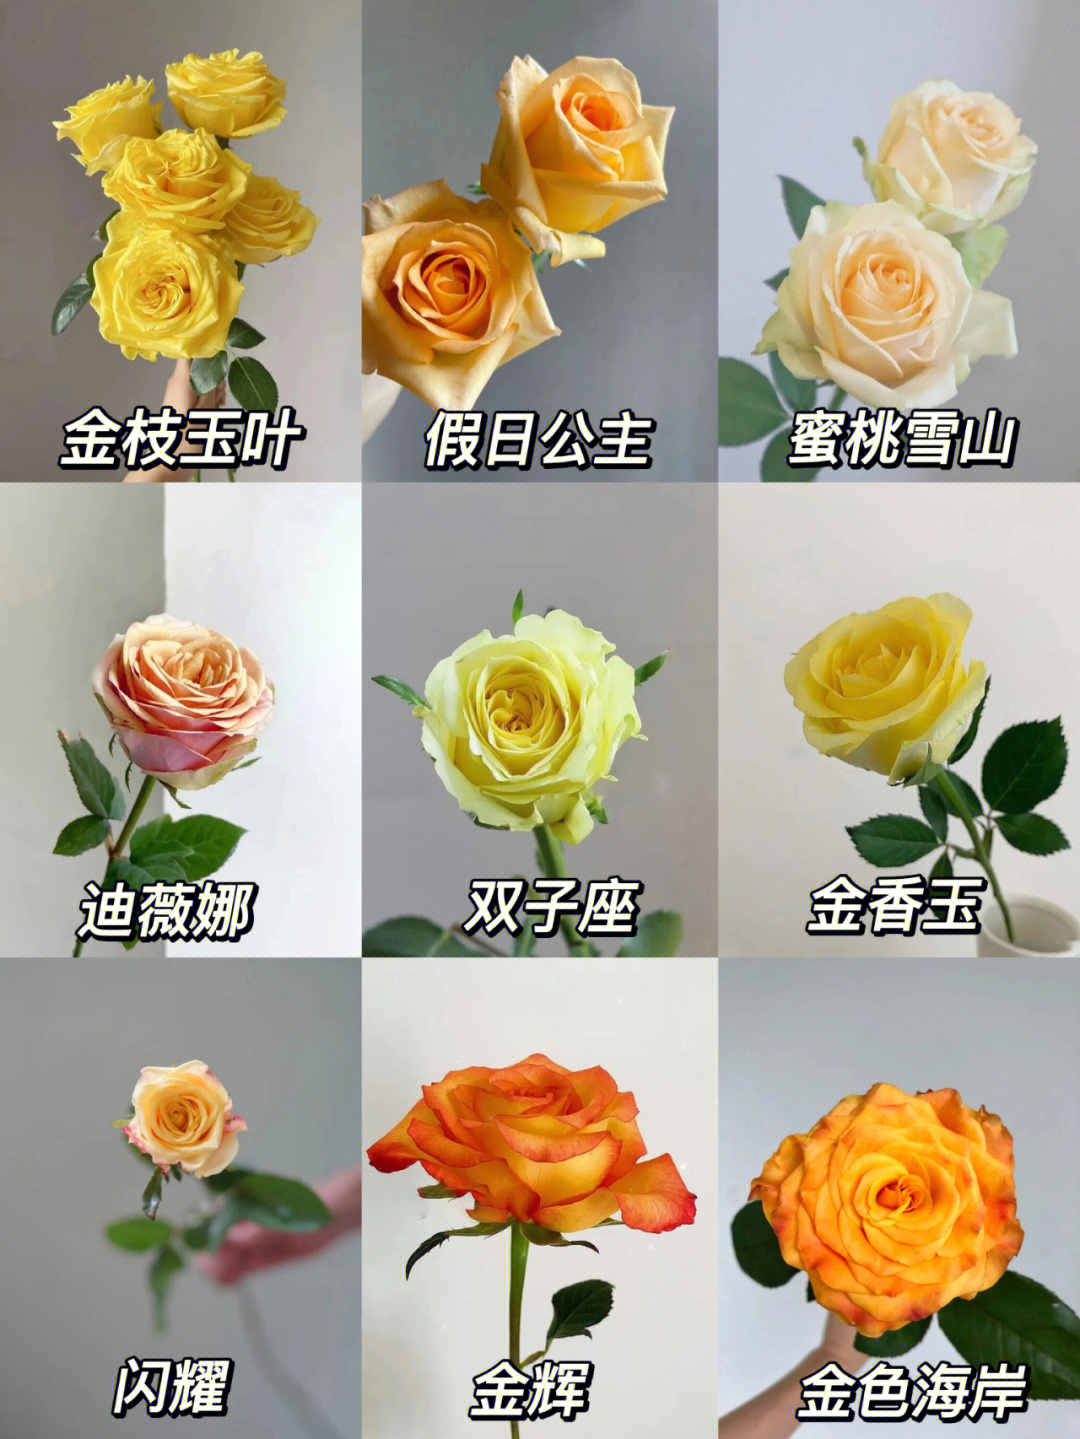 玫瑰的所有品种及图片图片